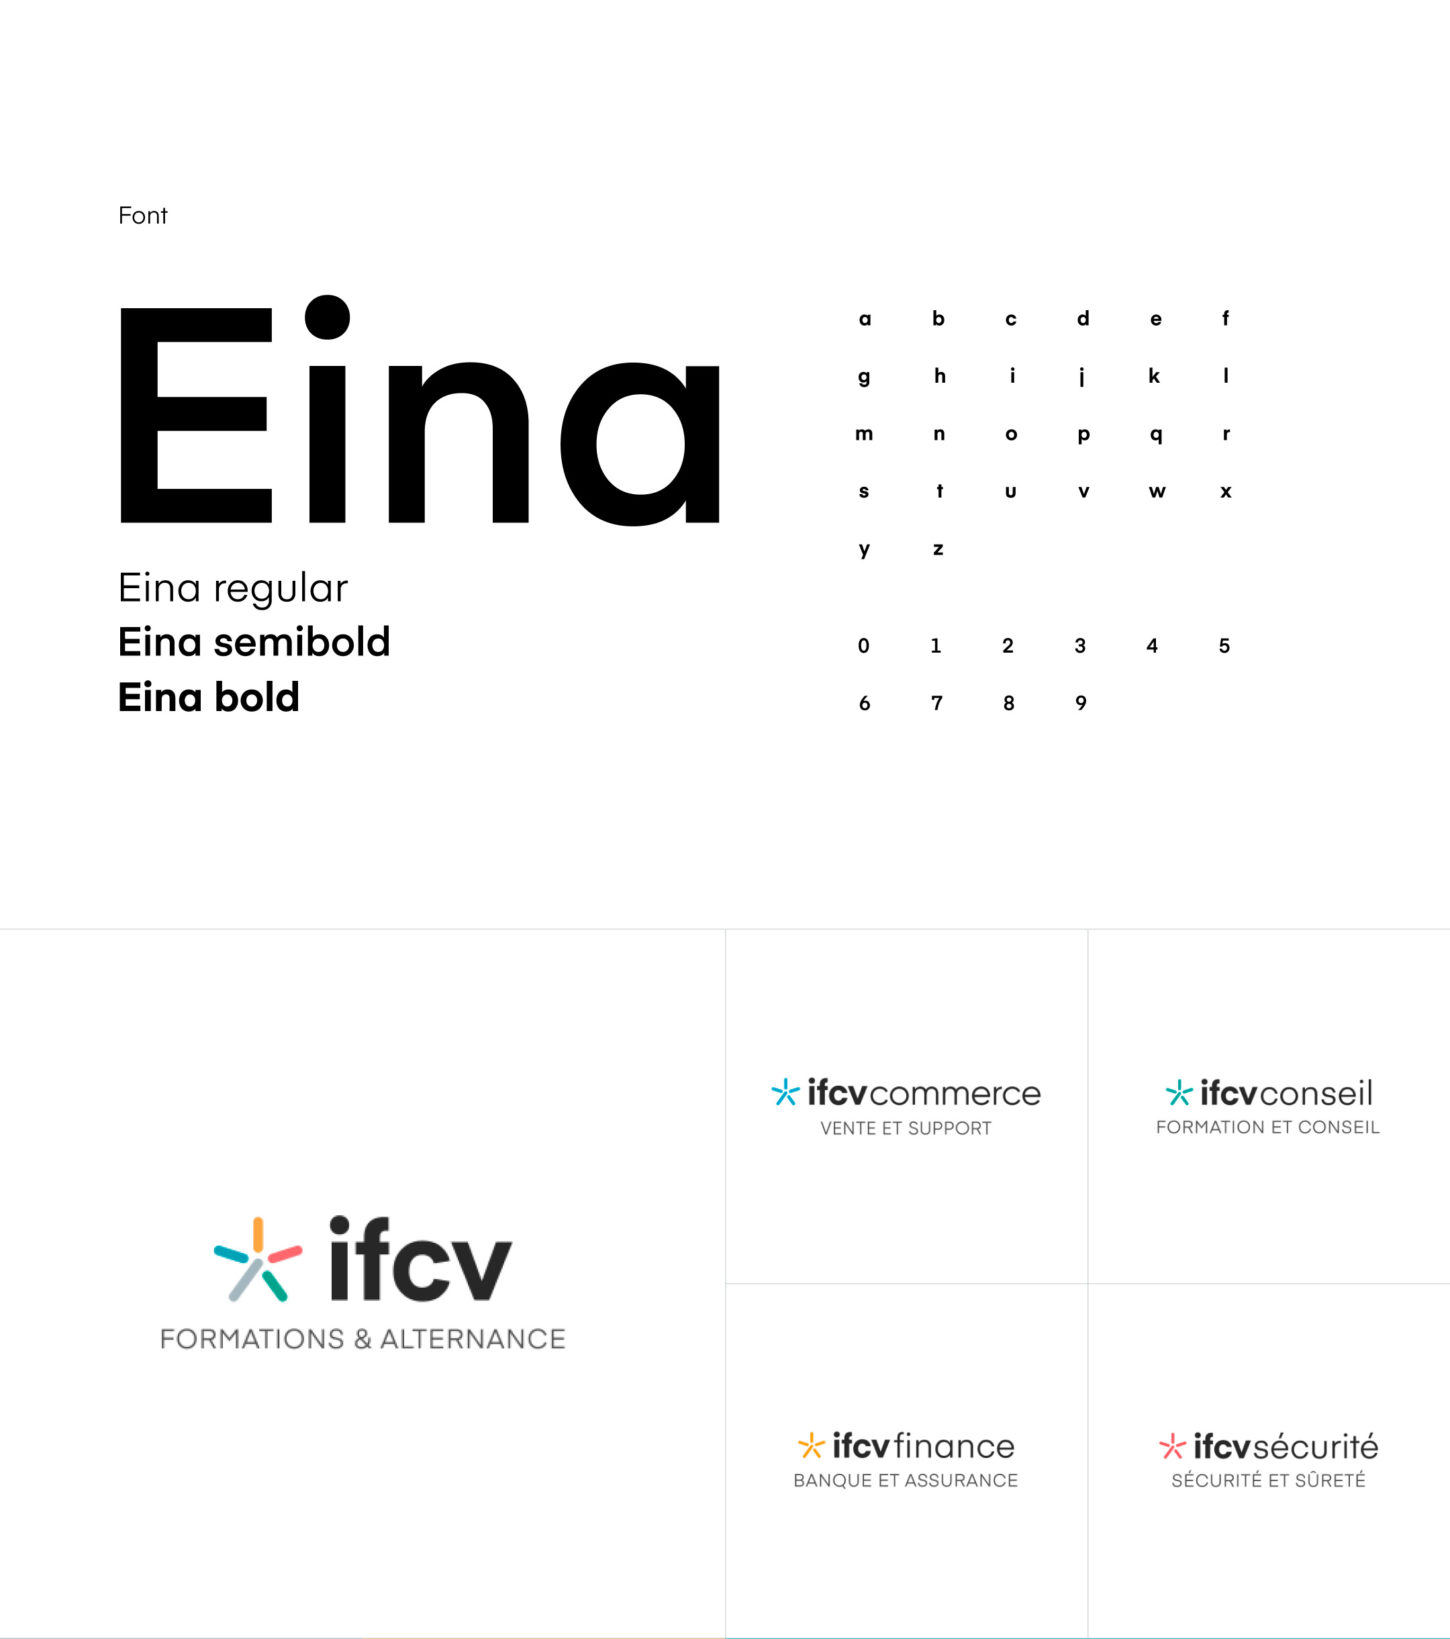 Création de la plateforme de marque et des sites internet du groupe IFCV, institut de formations à Paris